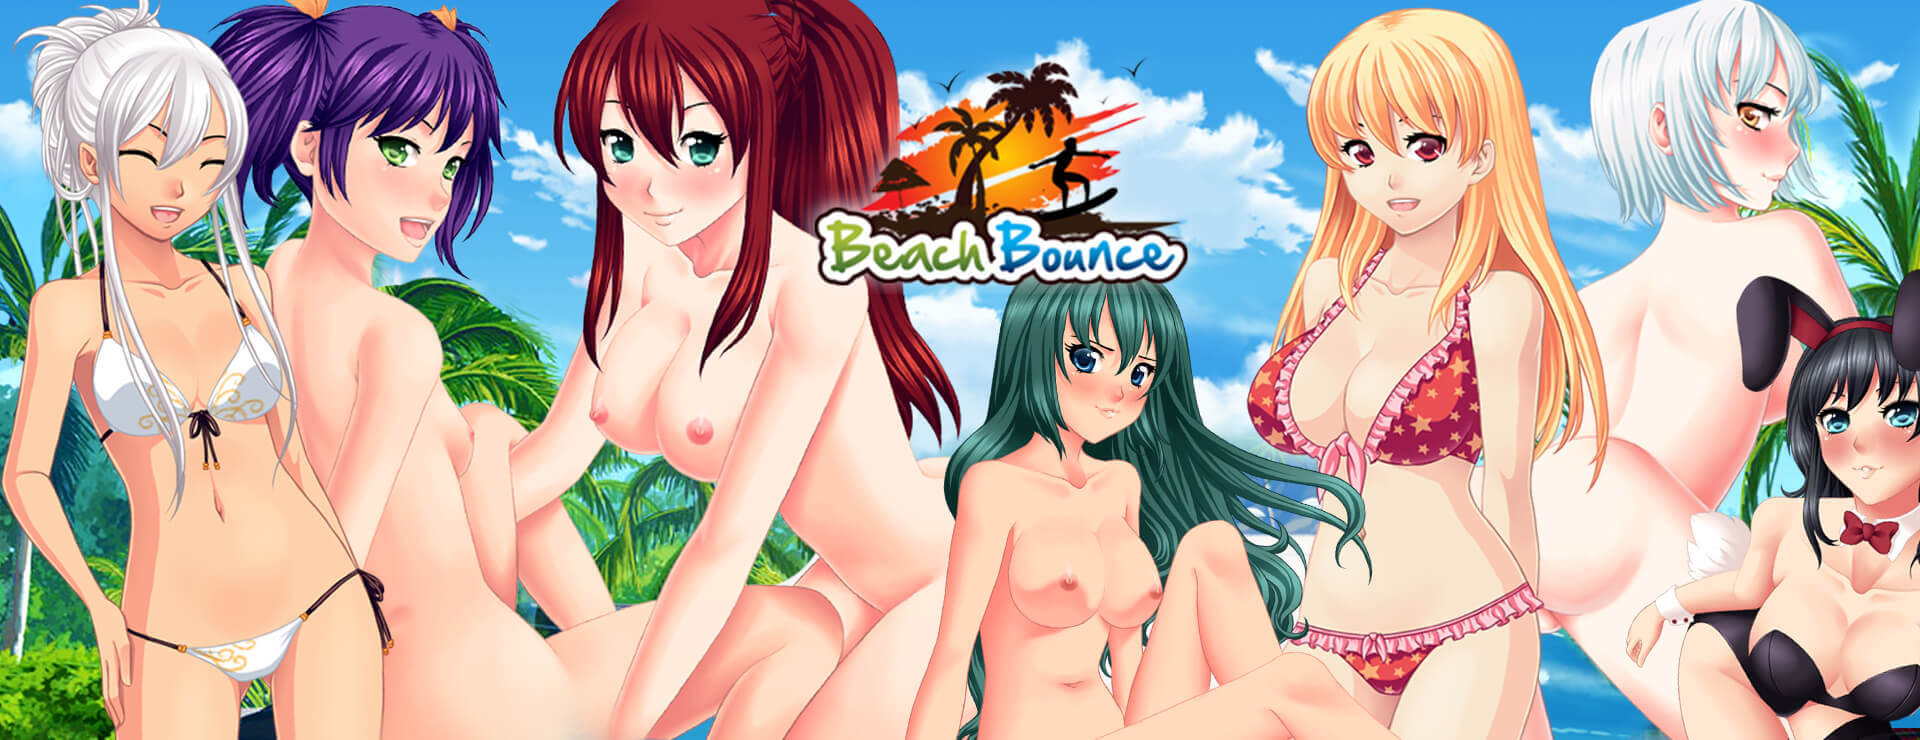 Beach Bounce - Powieść wizualna Gra